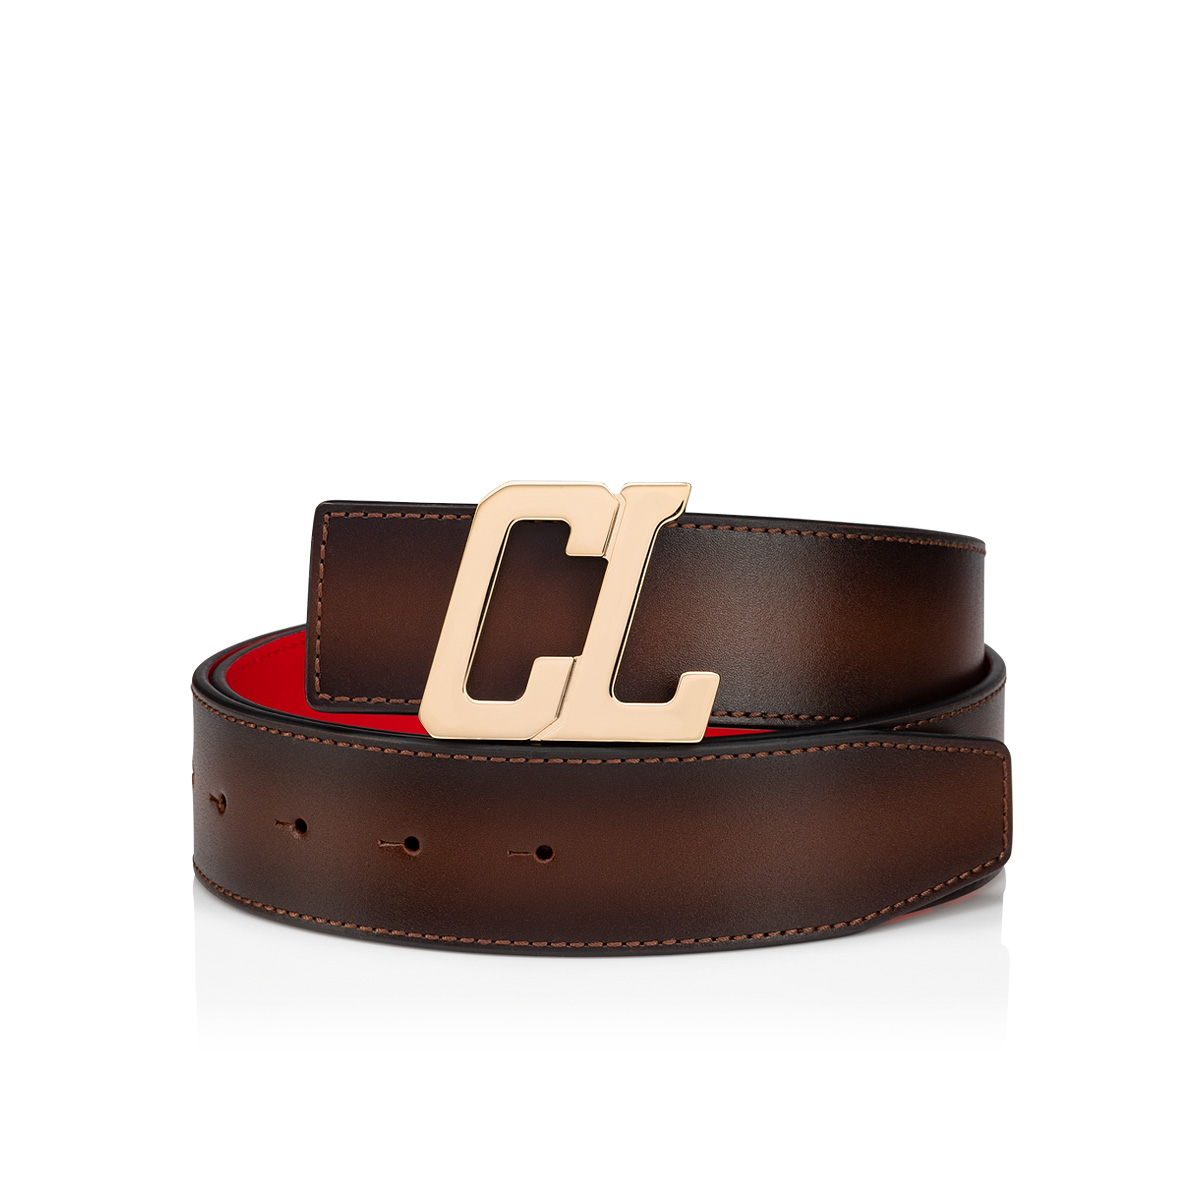 Fullbox+Tag] Túi belt mini đeo chéo LV.Coussin Micro,dây xích belt,logo dập  nổi chi tiết